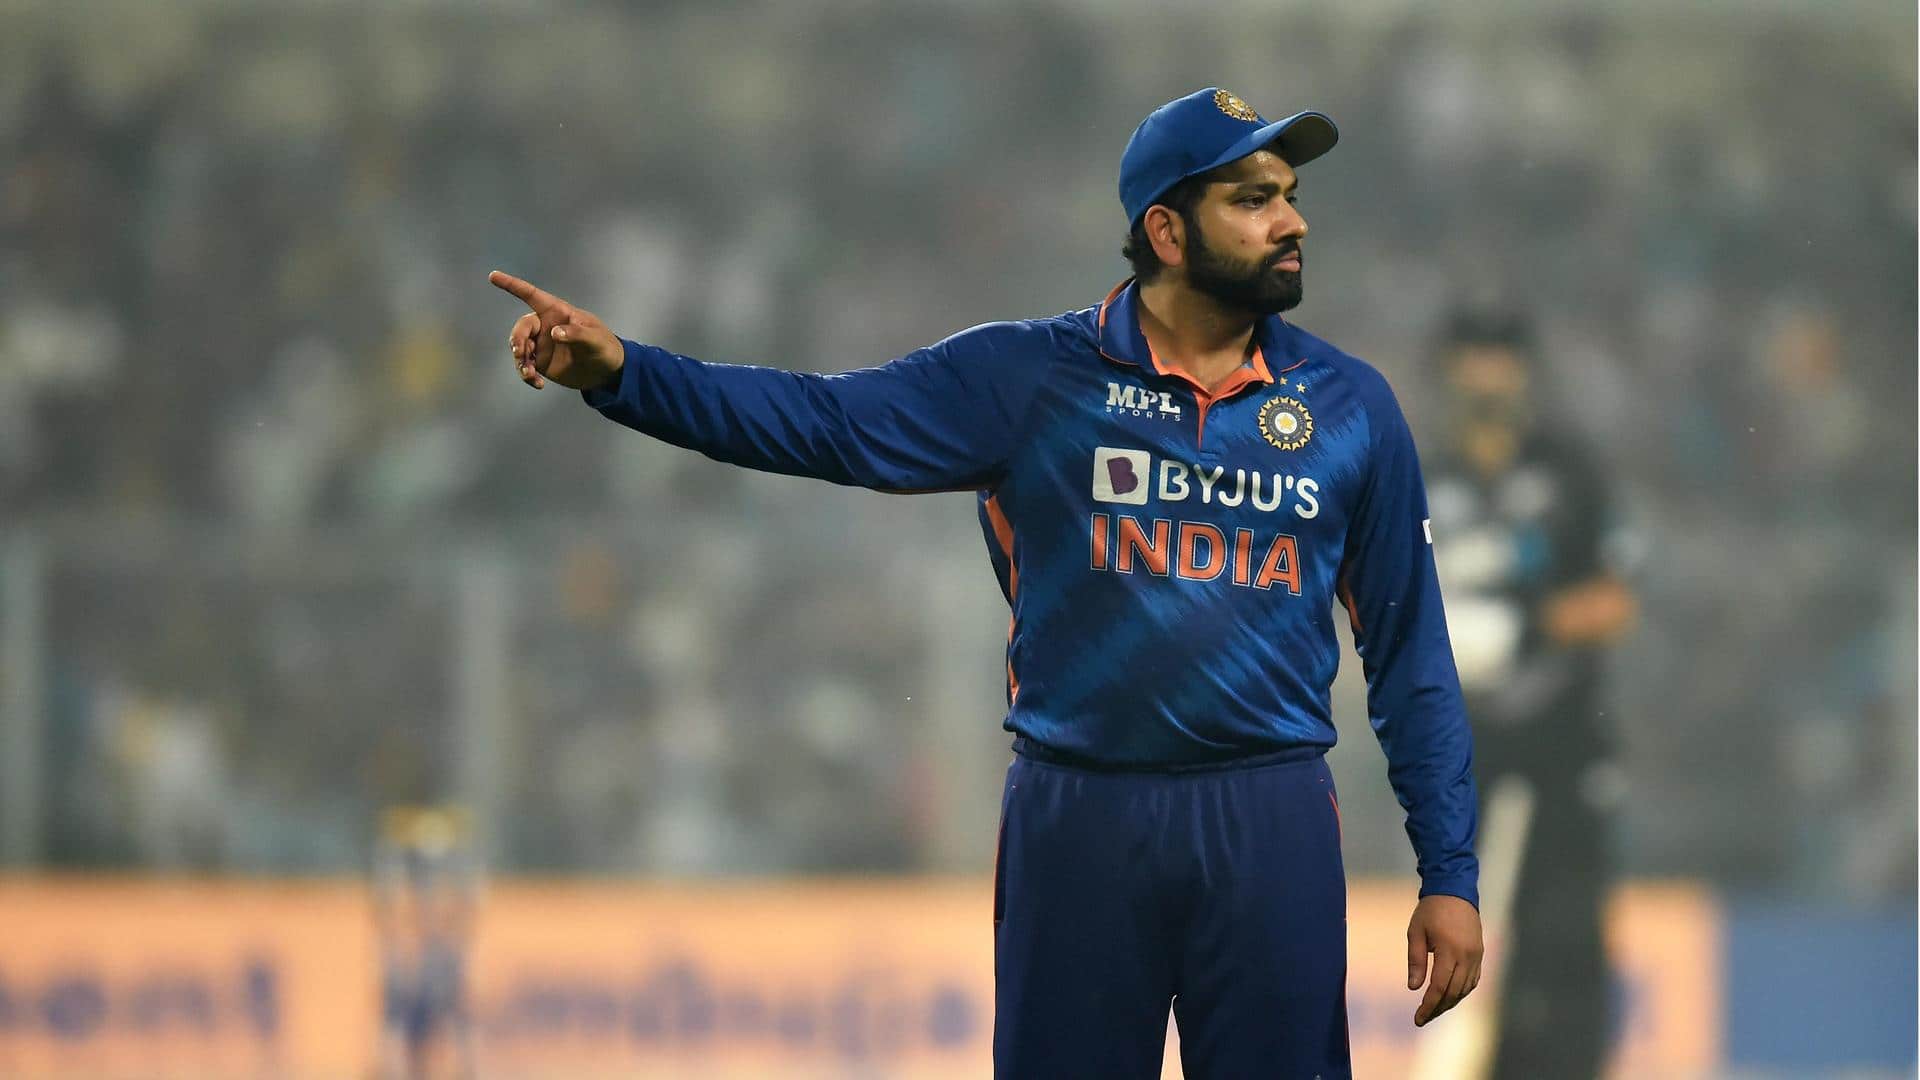 IND vs NZ, 1st ODI: Rohit Sharma opts to bat